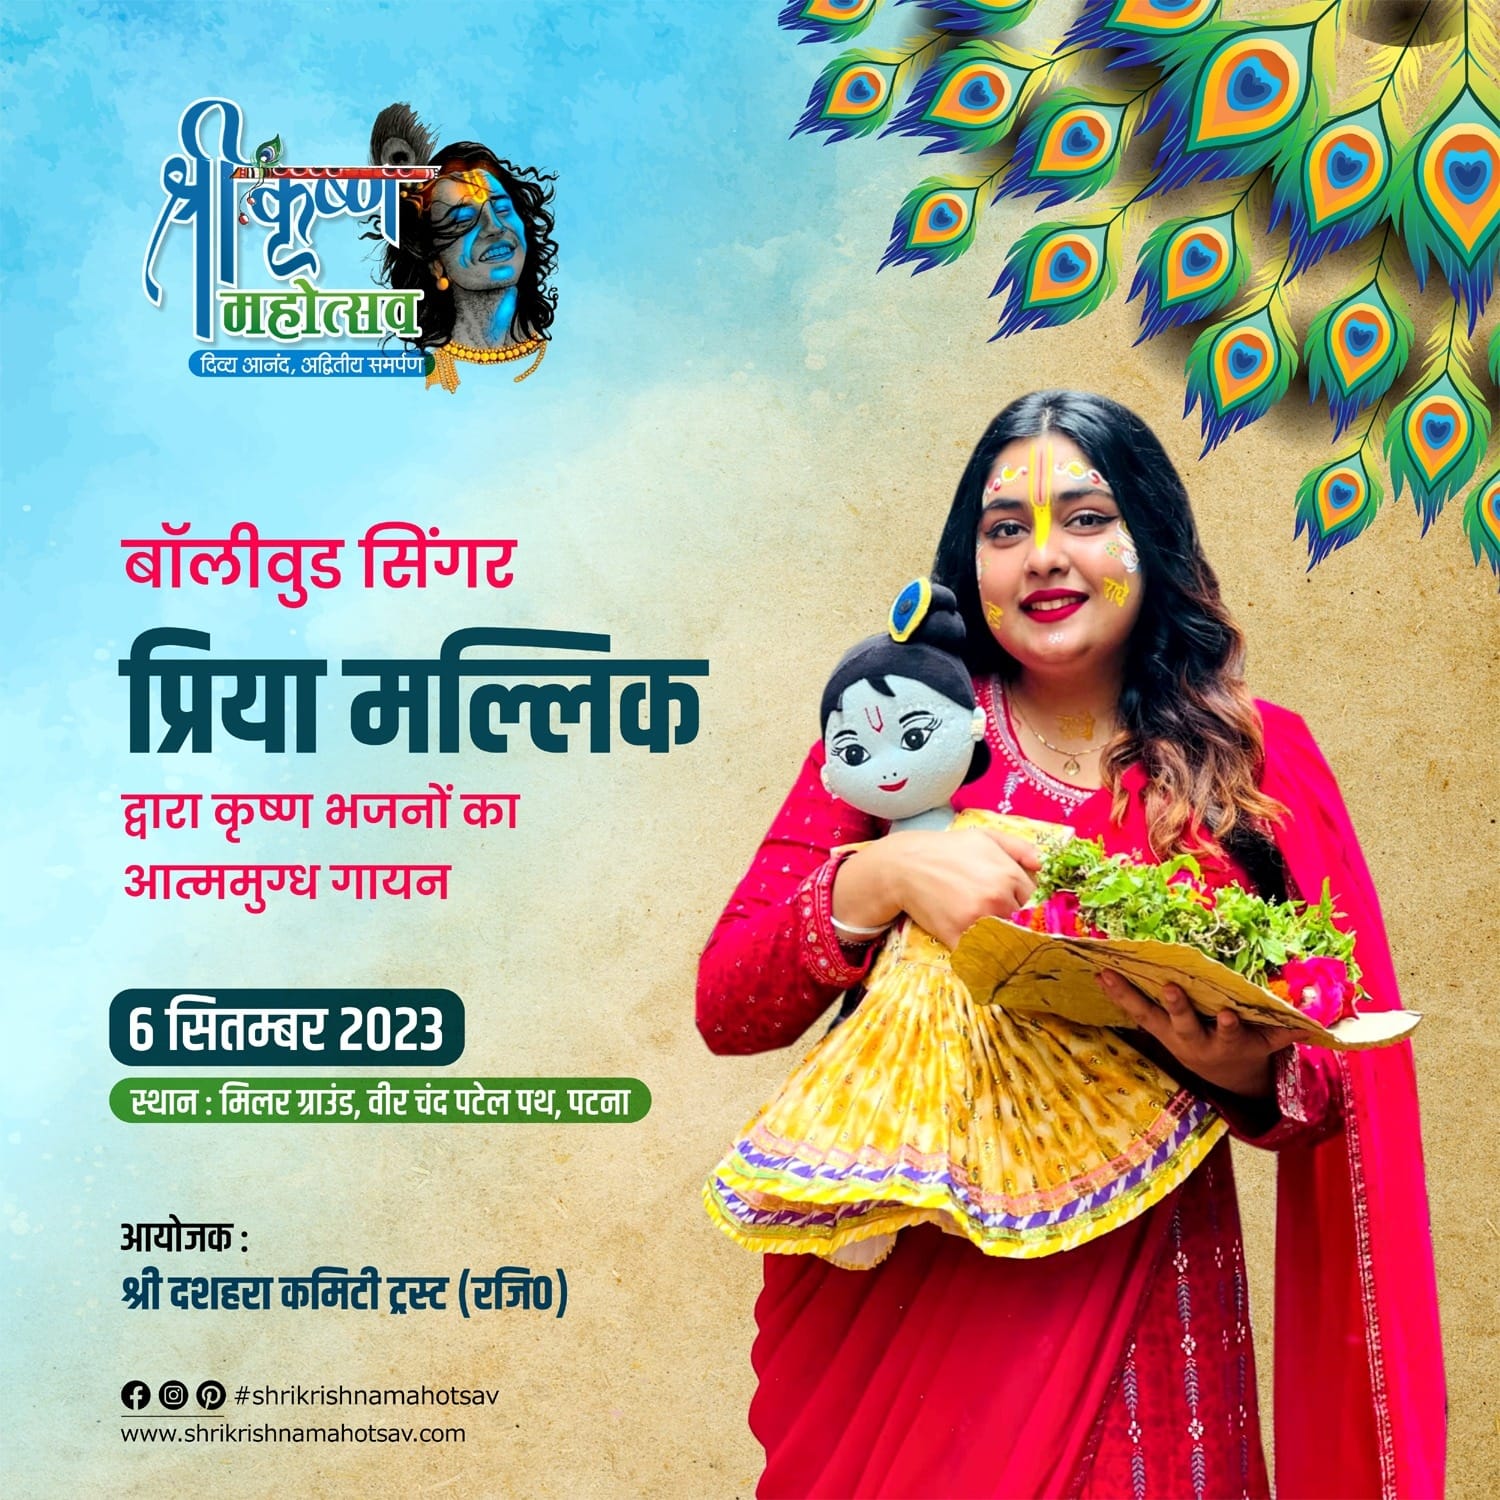 Priya Malik to Enthrall Audiences at Shri Krishna Mahotsav in Patna!*